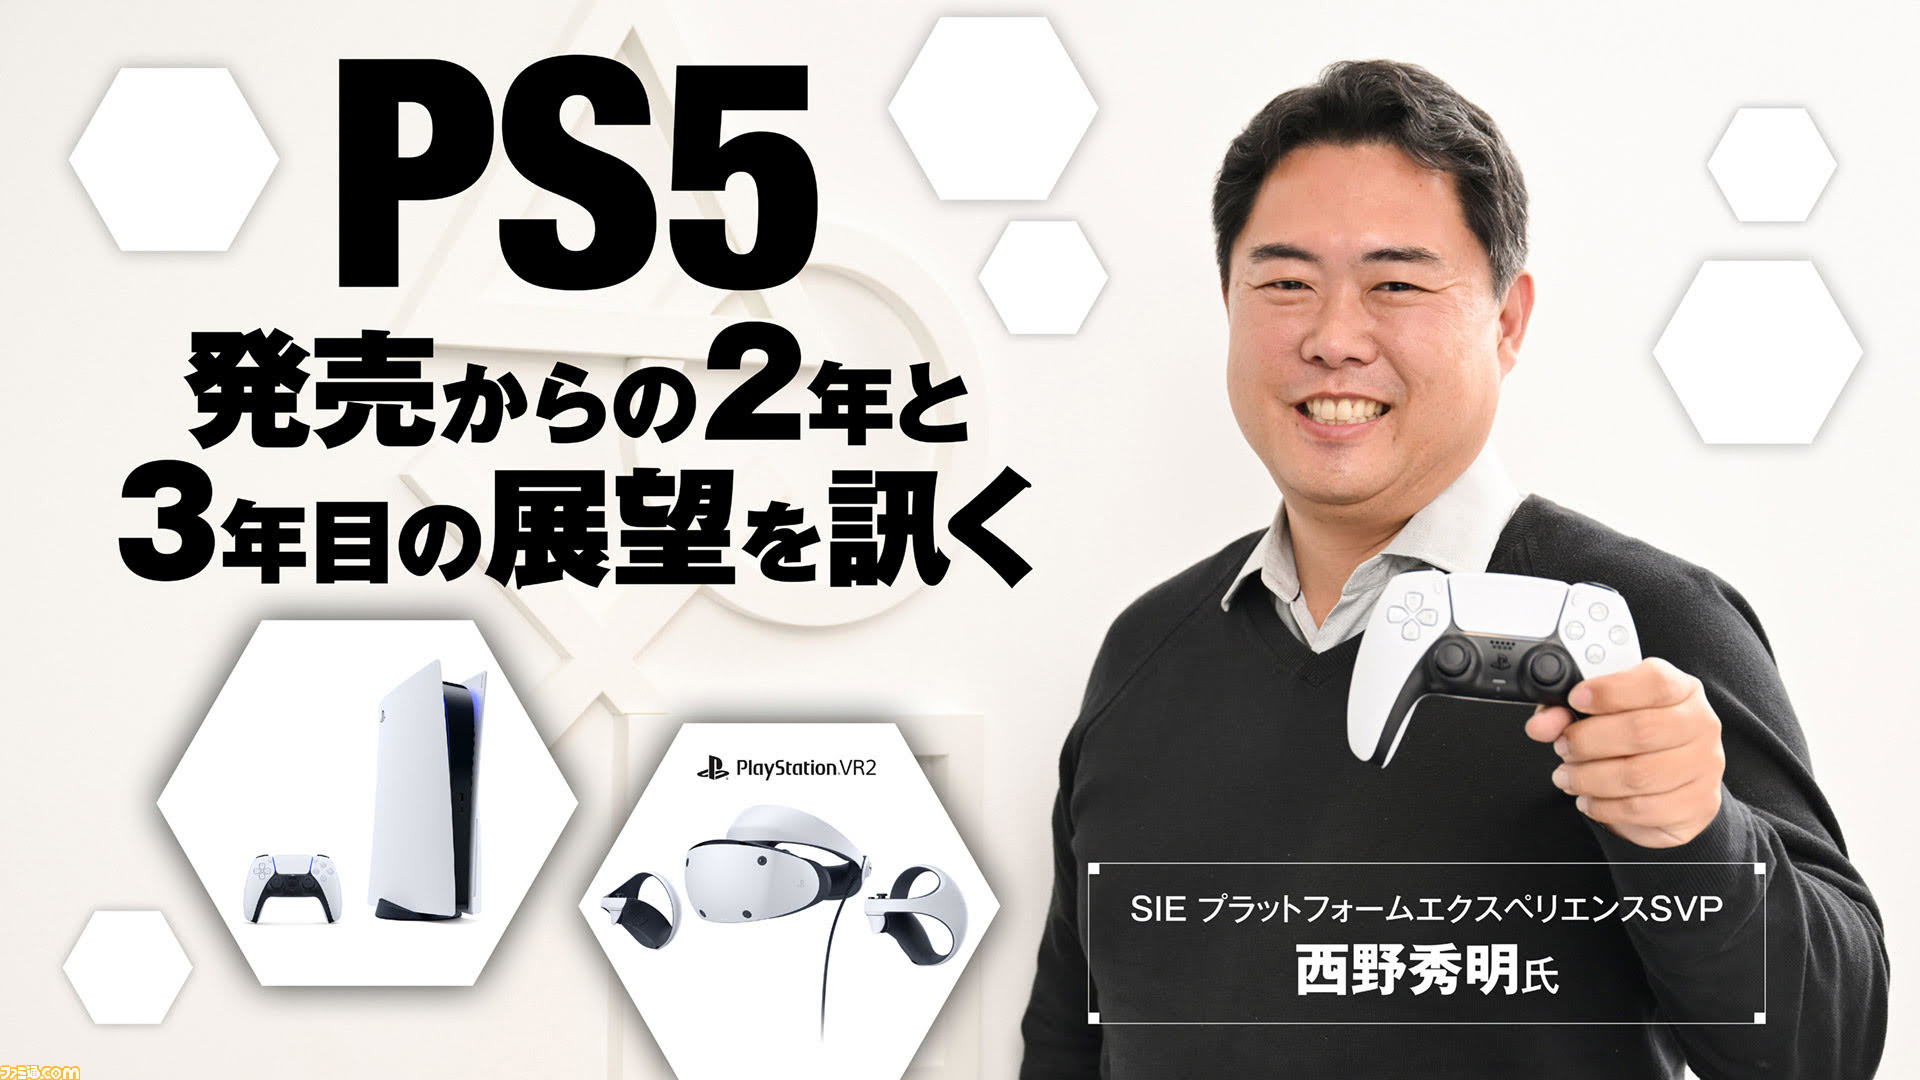 3年目を迎えるPS5とPS VR2について、SIE 西野秀明氏に訊く。PS5の生産